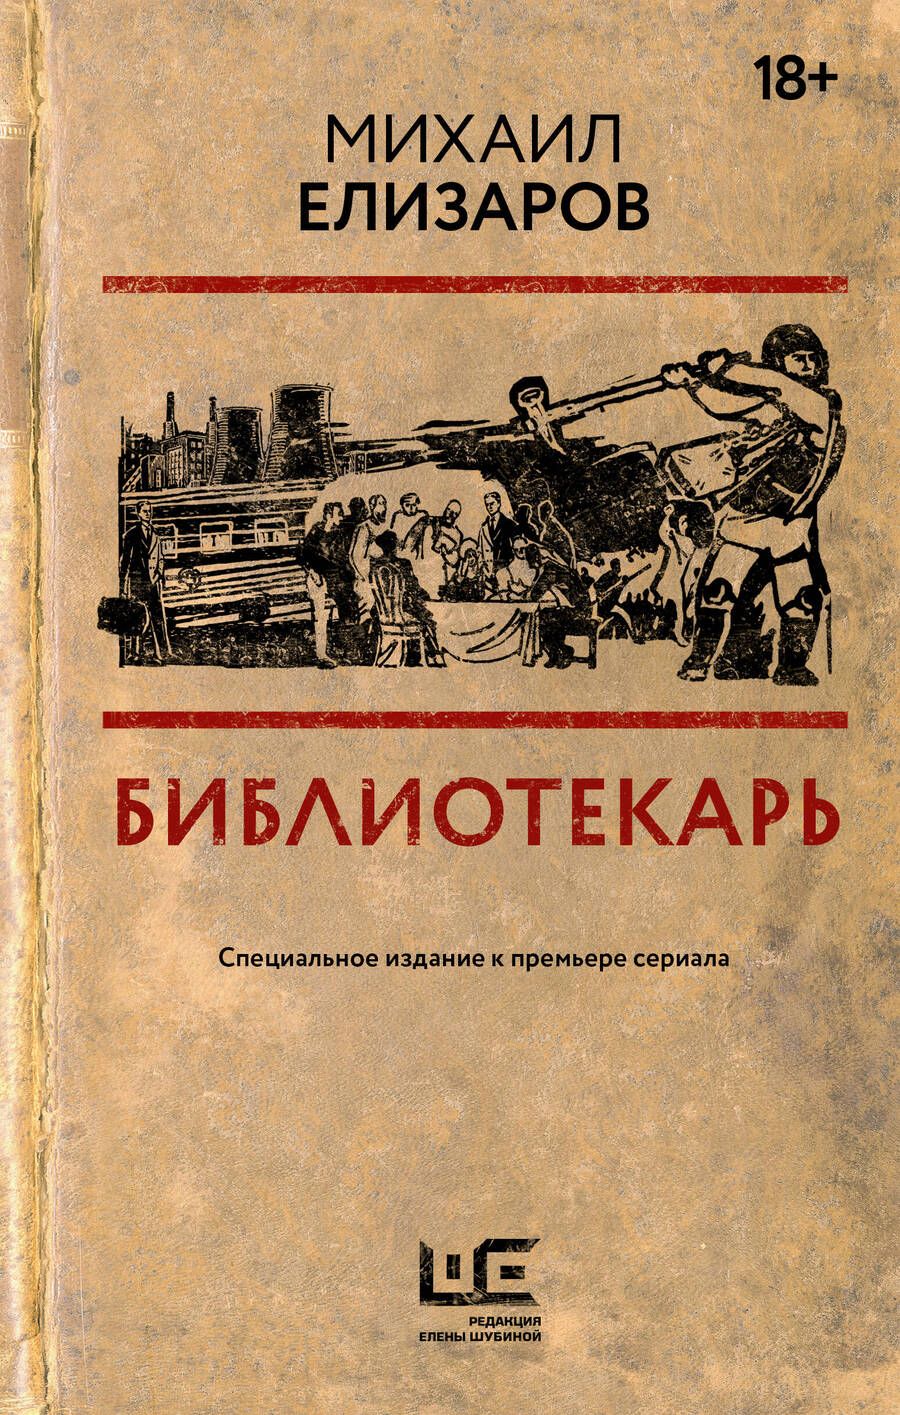 Обложка книги "Елизаров: Библиотекарь"